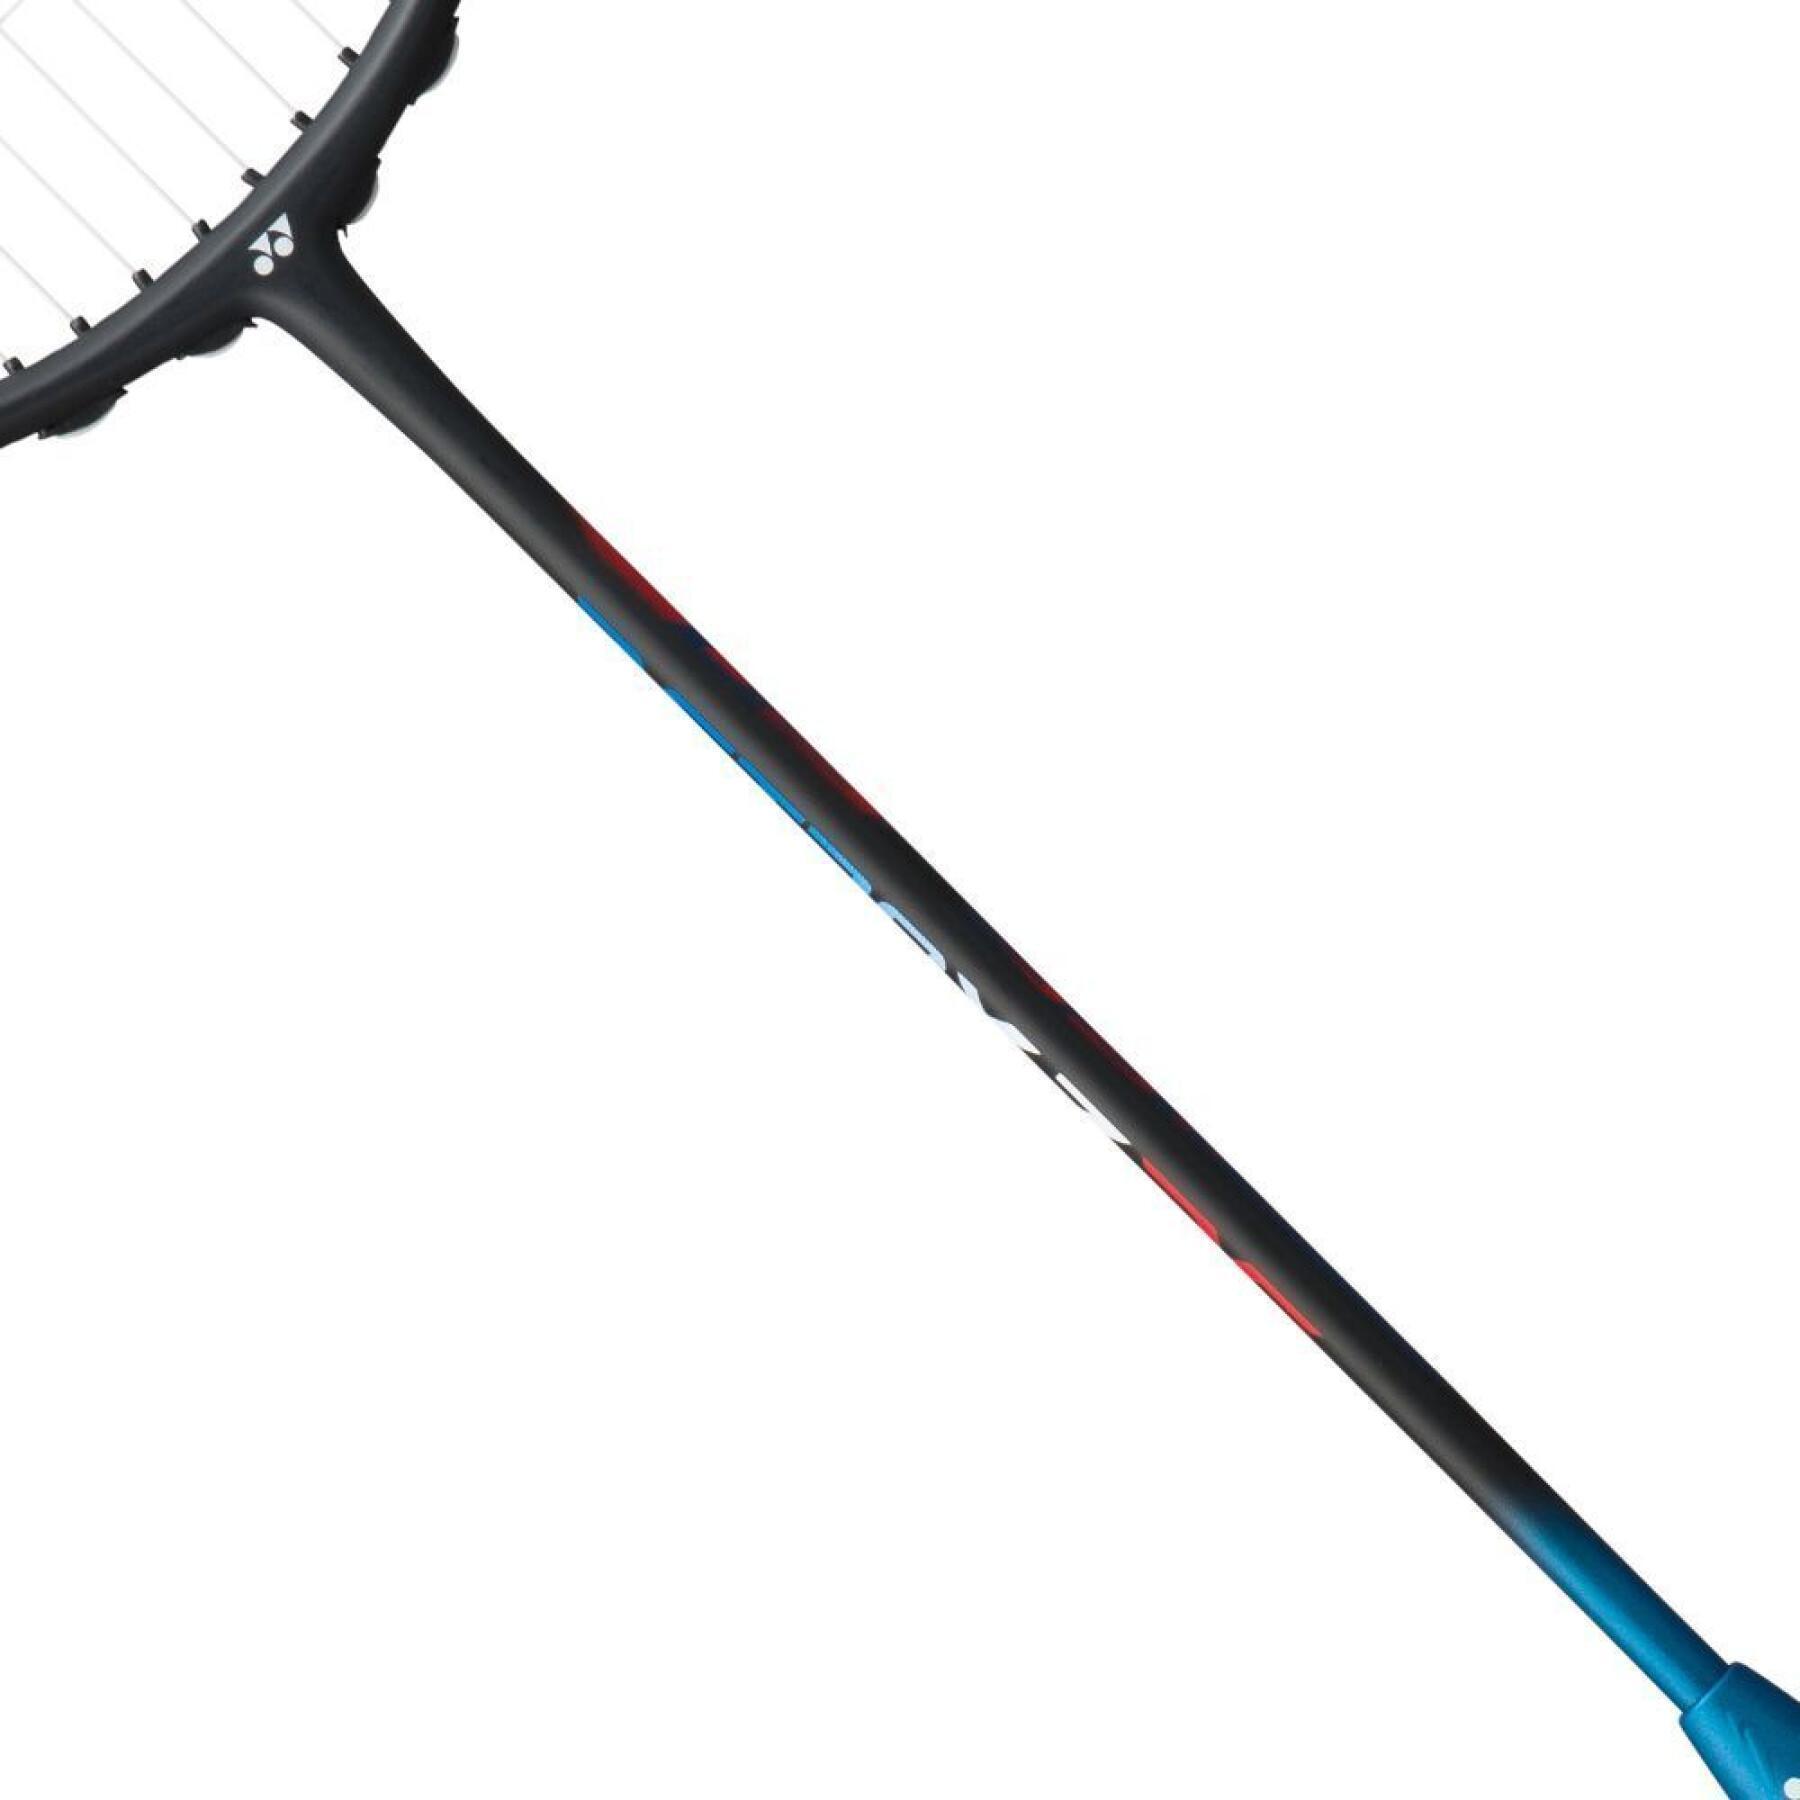 Badmintonschläger Yonex astrox 7 dg